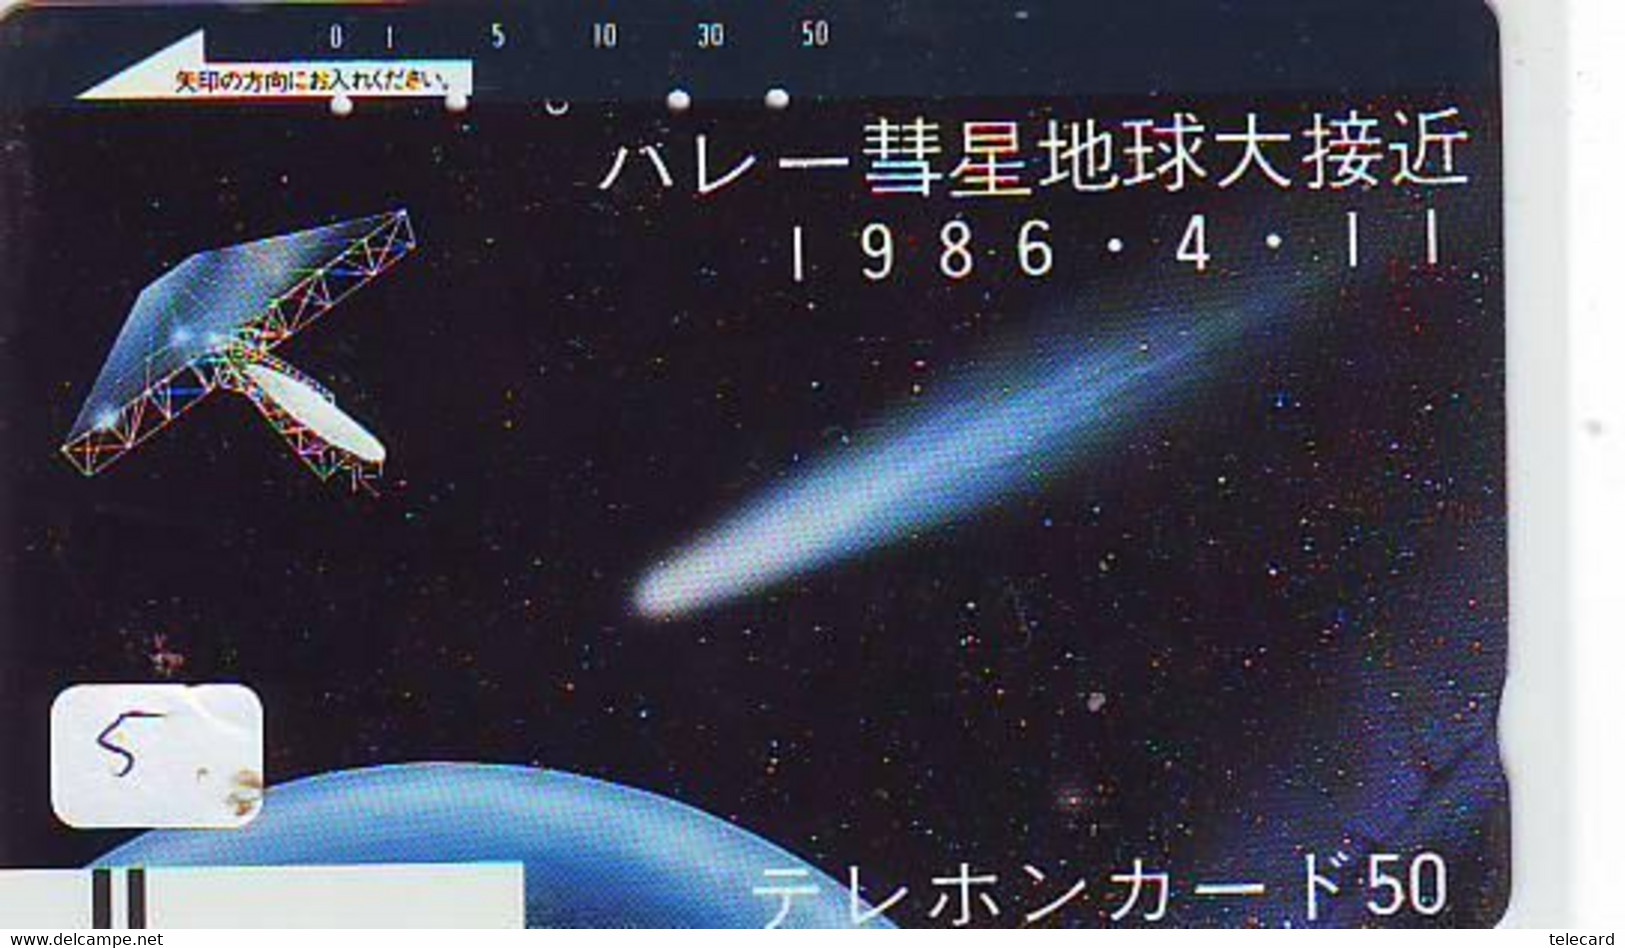 Télécarte COMET (5) COMETE-Japan SPACE * Espace * WELTRAUM *UNIVERSE* PLANET* BALKEN* 110-4408 - Astronomùia